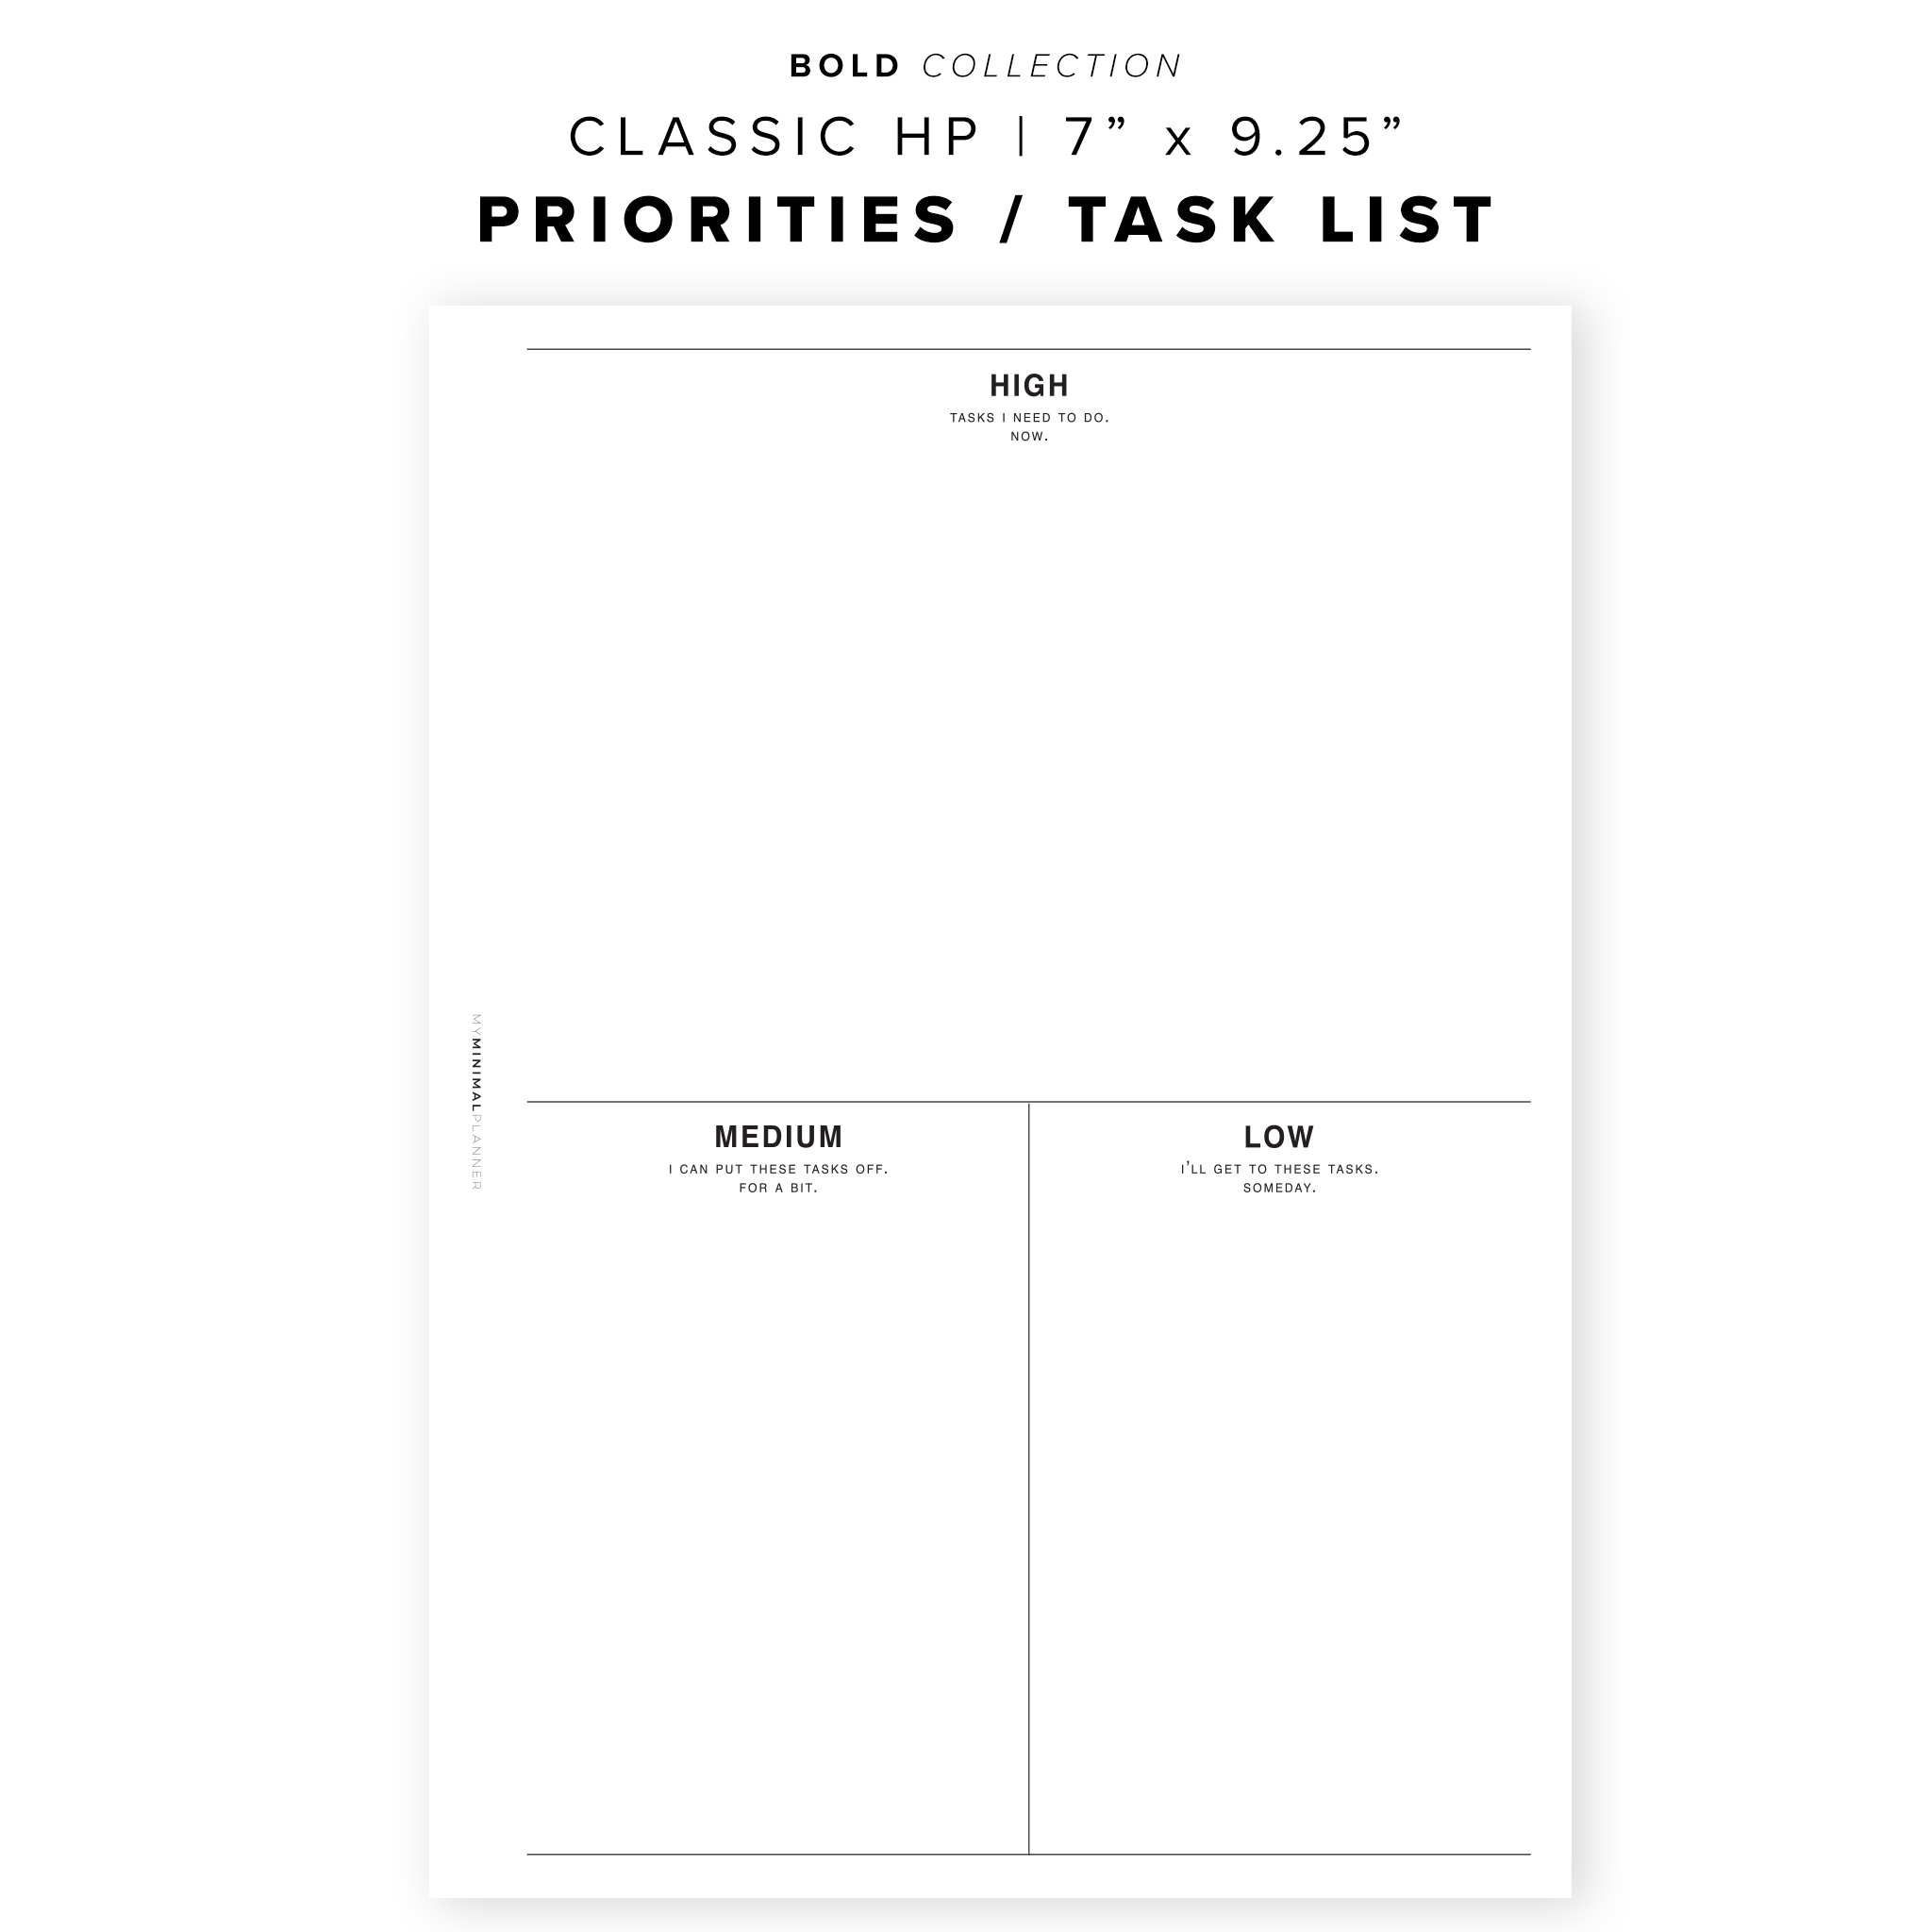 PR63 - Priorities / Tasks List - Printable Inserts